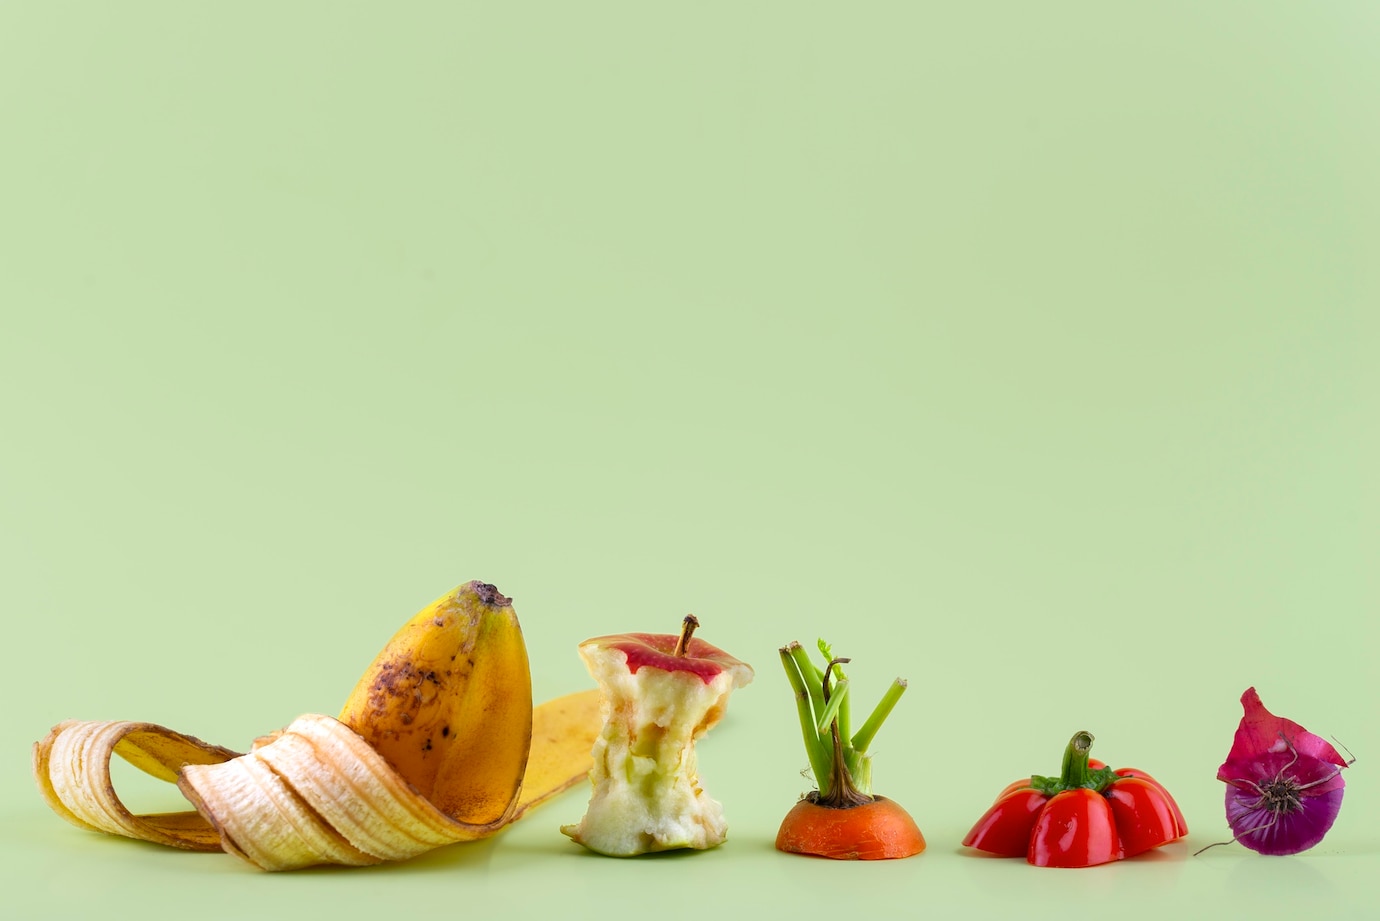 La imagen muestra restos de comida de plátano, manzana, zanahoria, cebolla y pimiento sobre una mesa y con fondo verde agua.